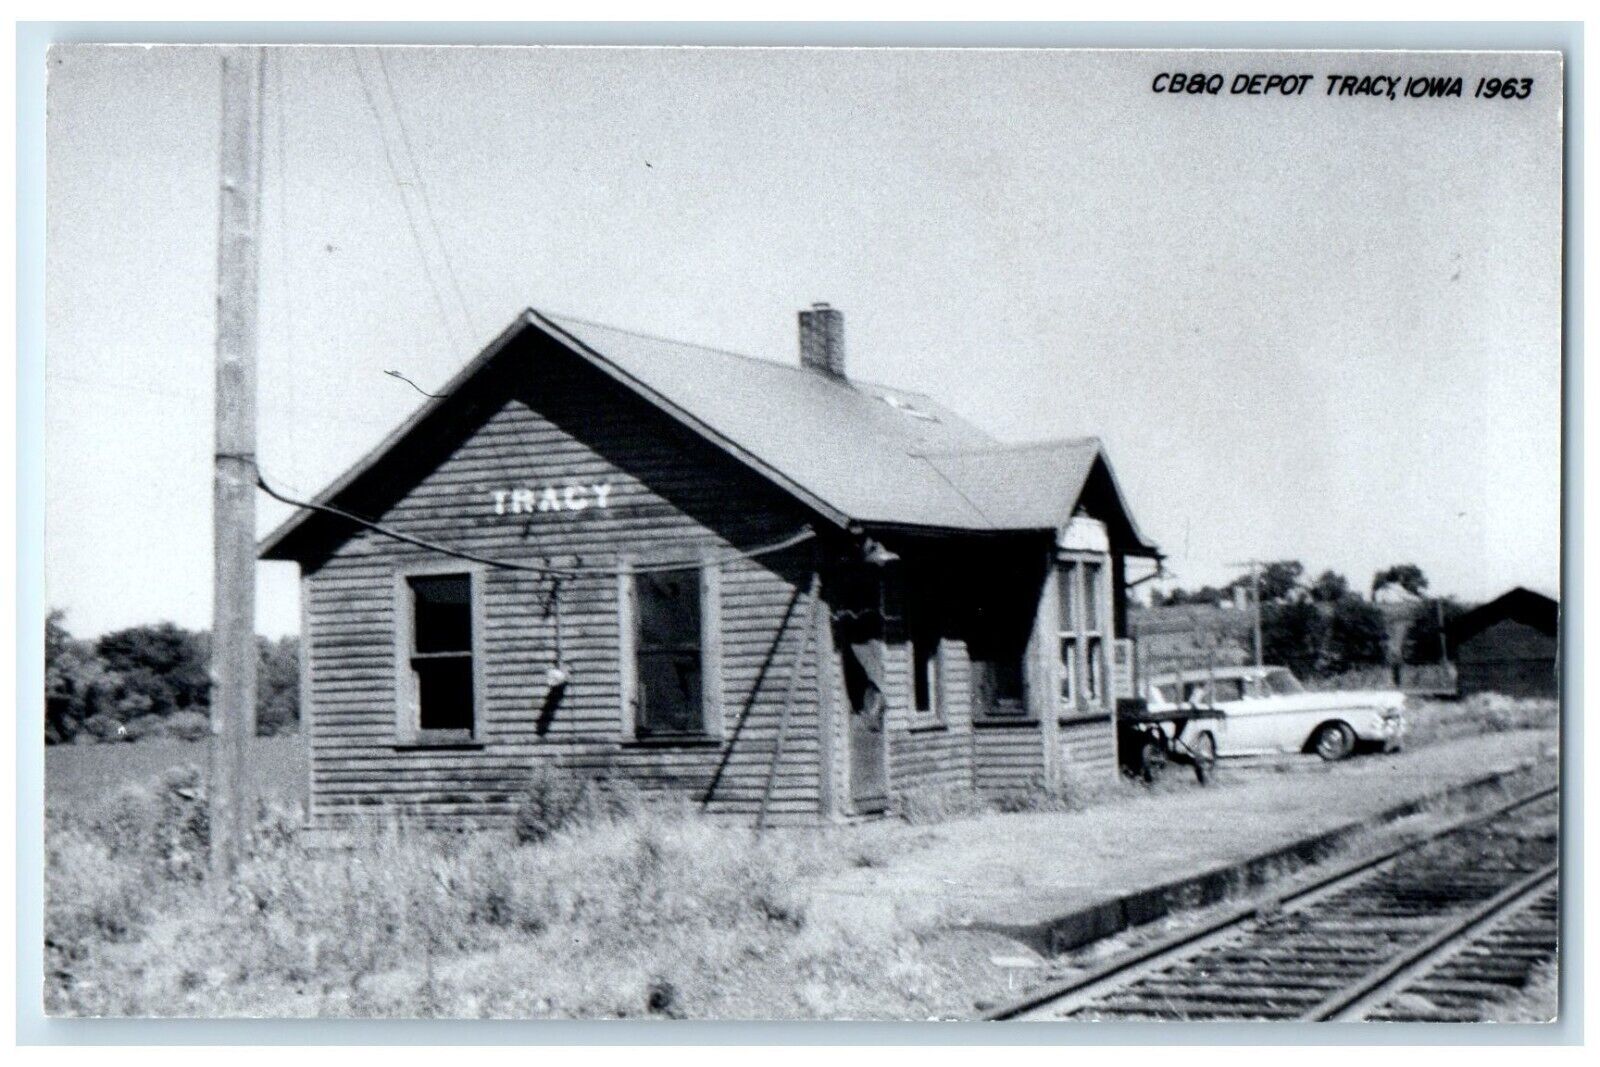 c1963 CB&Q Depot Tracy Iowa IA Railroad Train Depot Station RPPC Photo Postcard